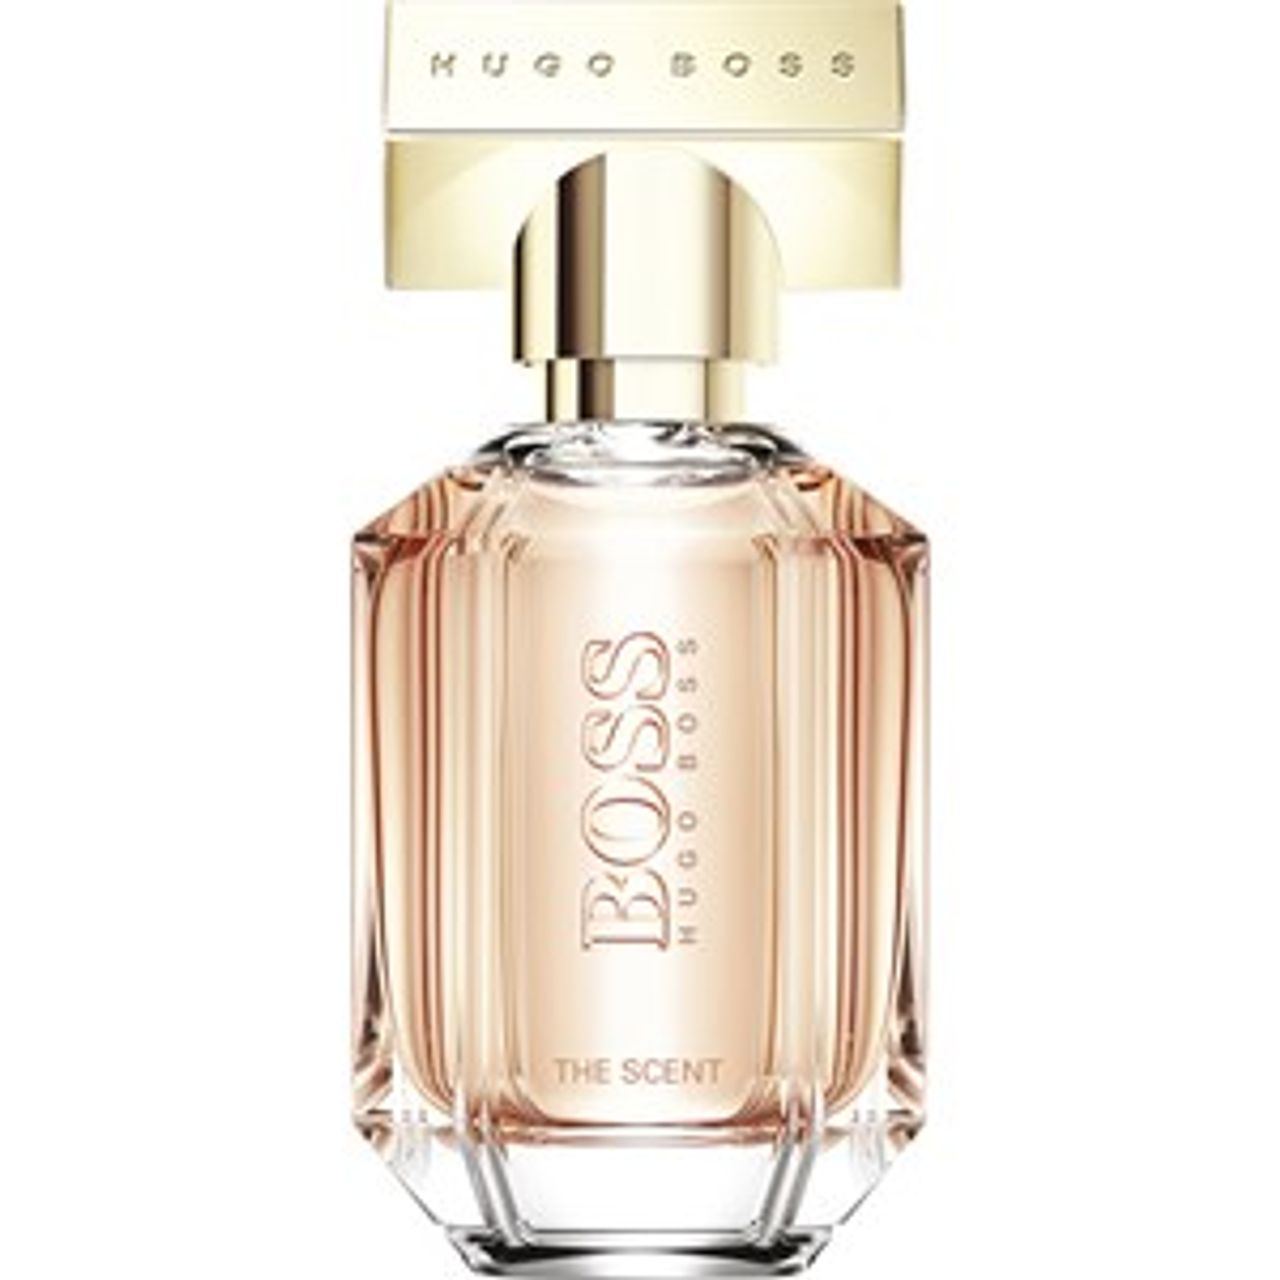 Hugo Boss Eau de Parfum Spray 2 100 ml